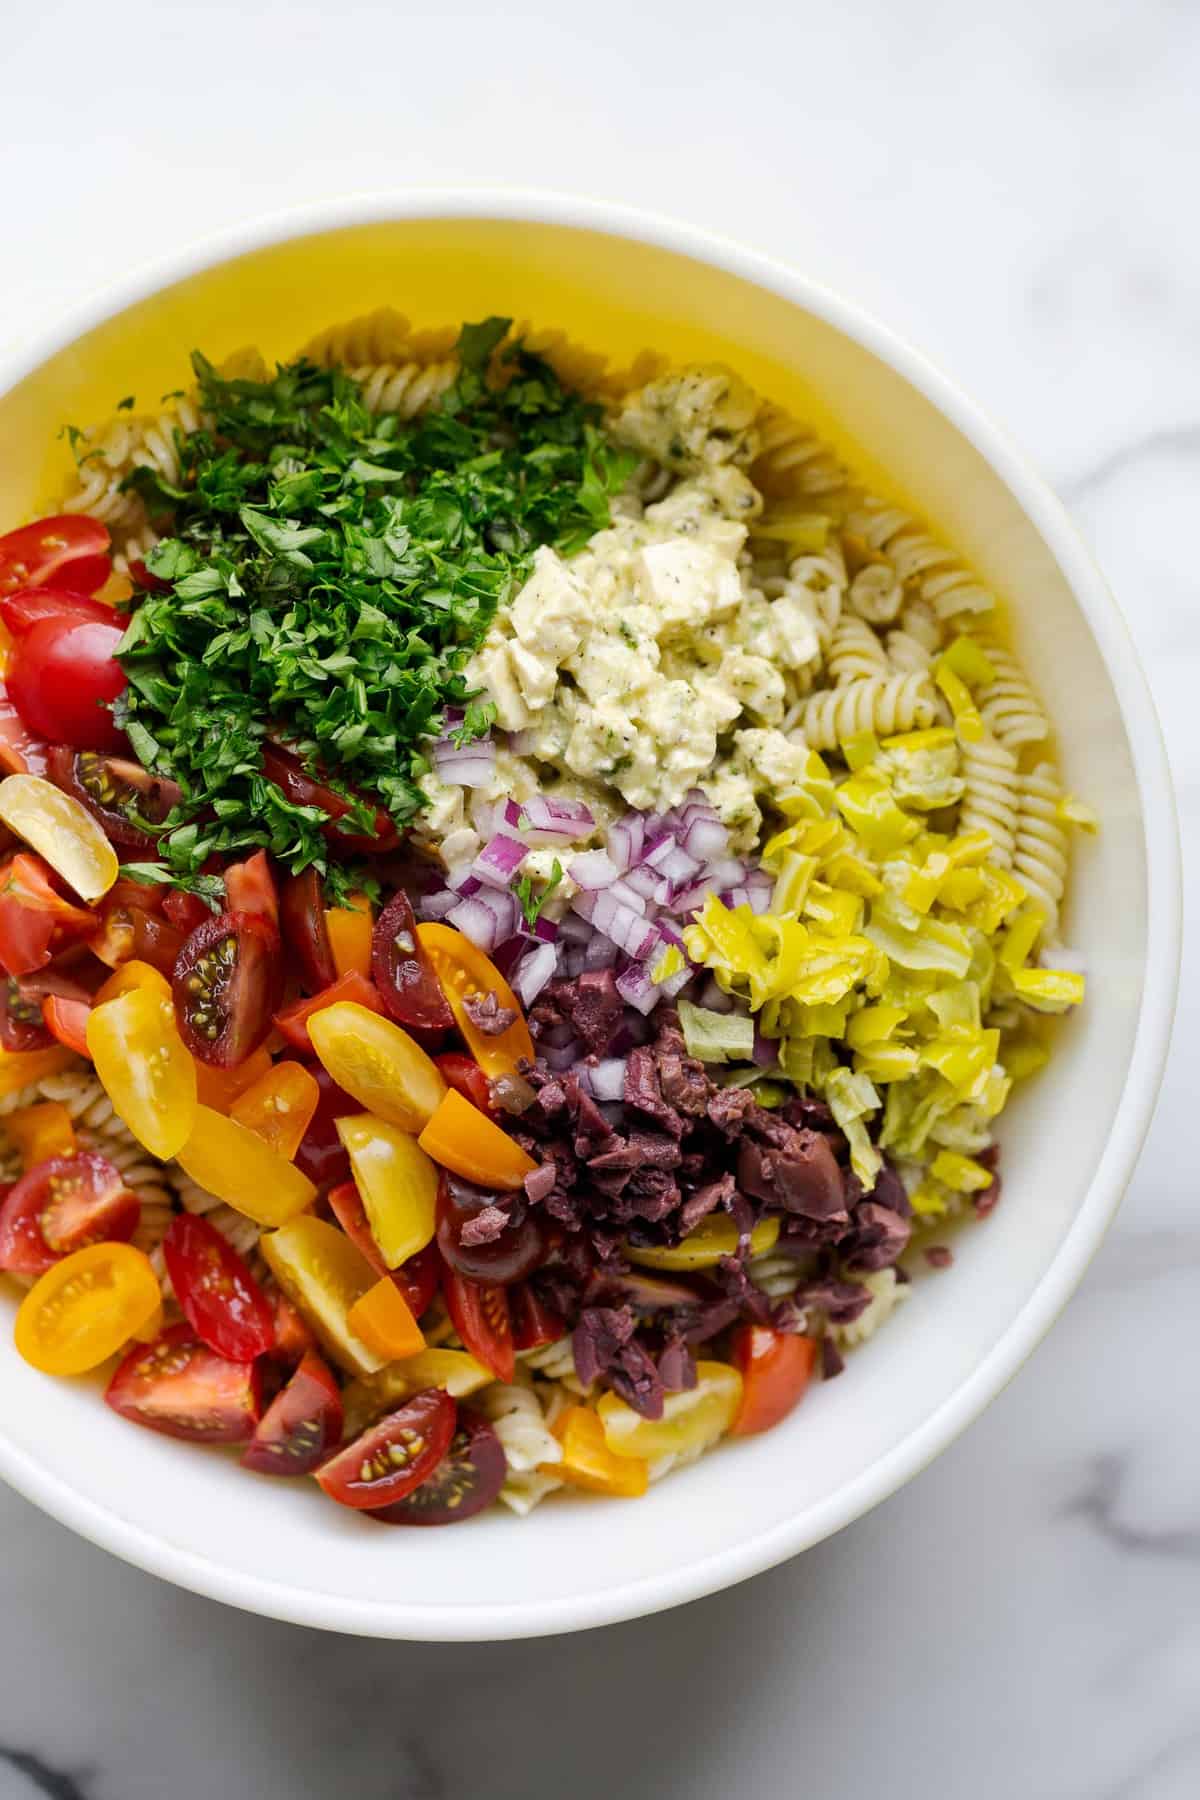 Vegan Italian pasta salad ingredients in a mixing bowl.